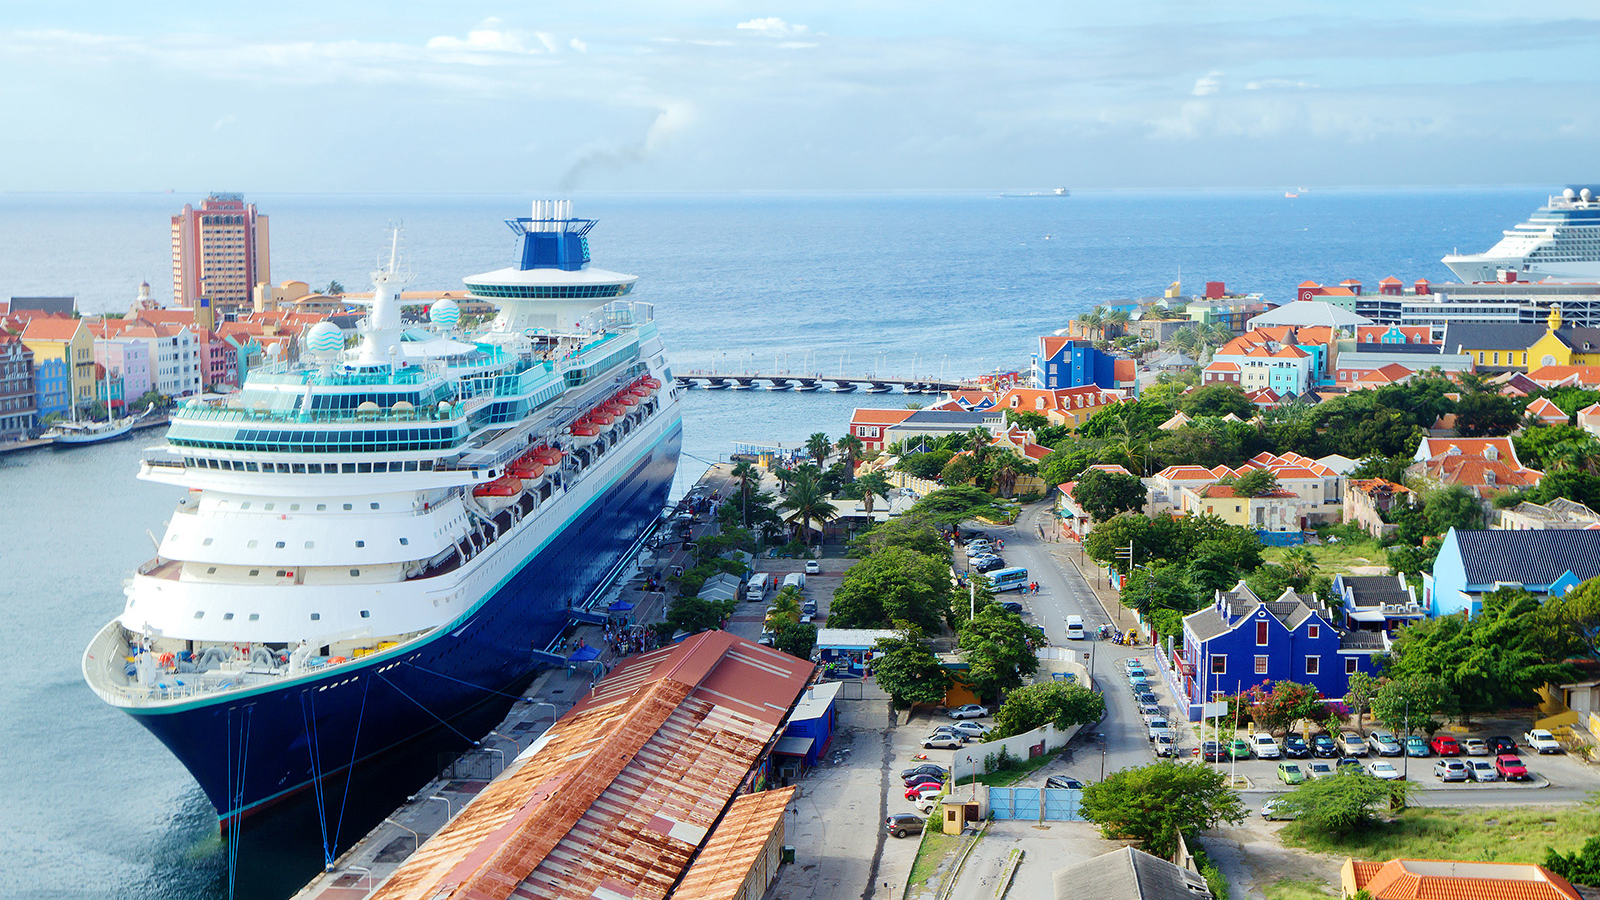 De mega cruise pier op Curaçao.